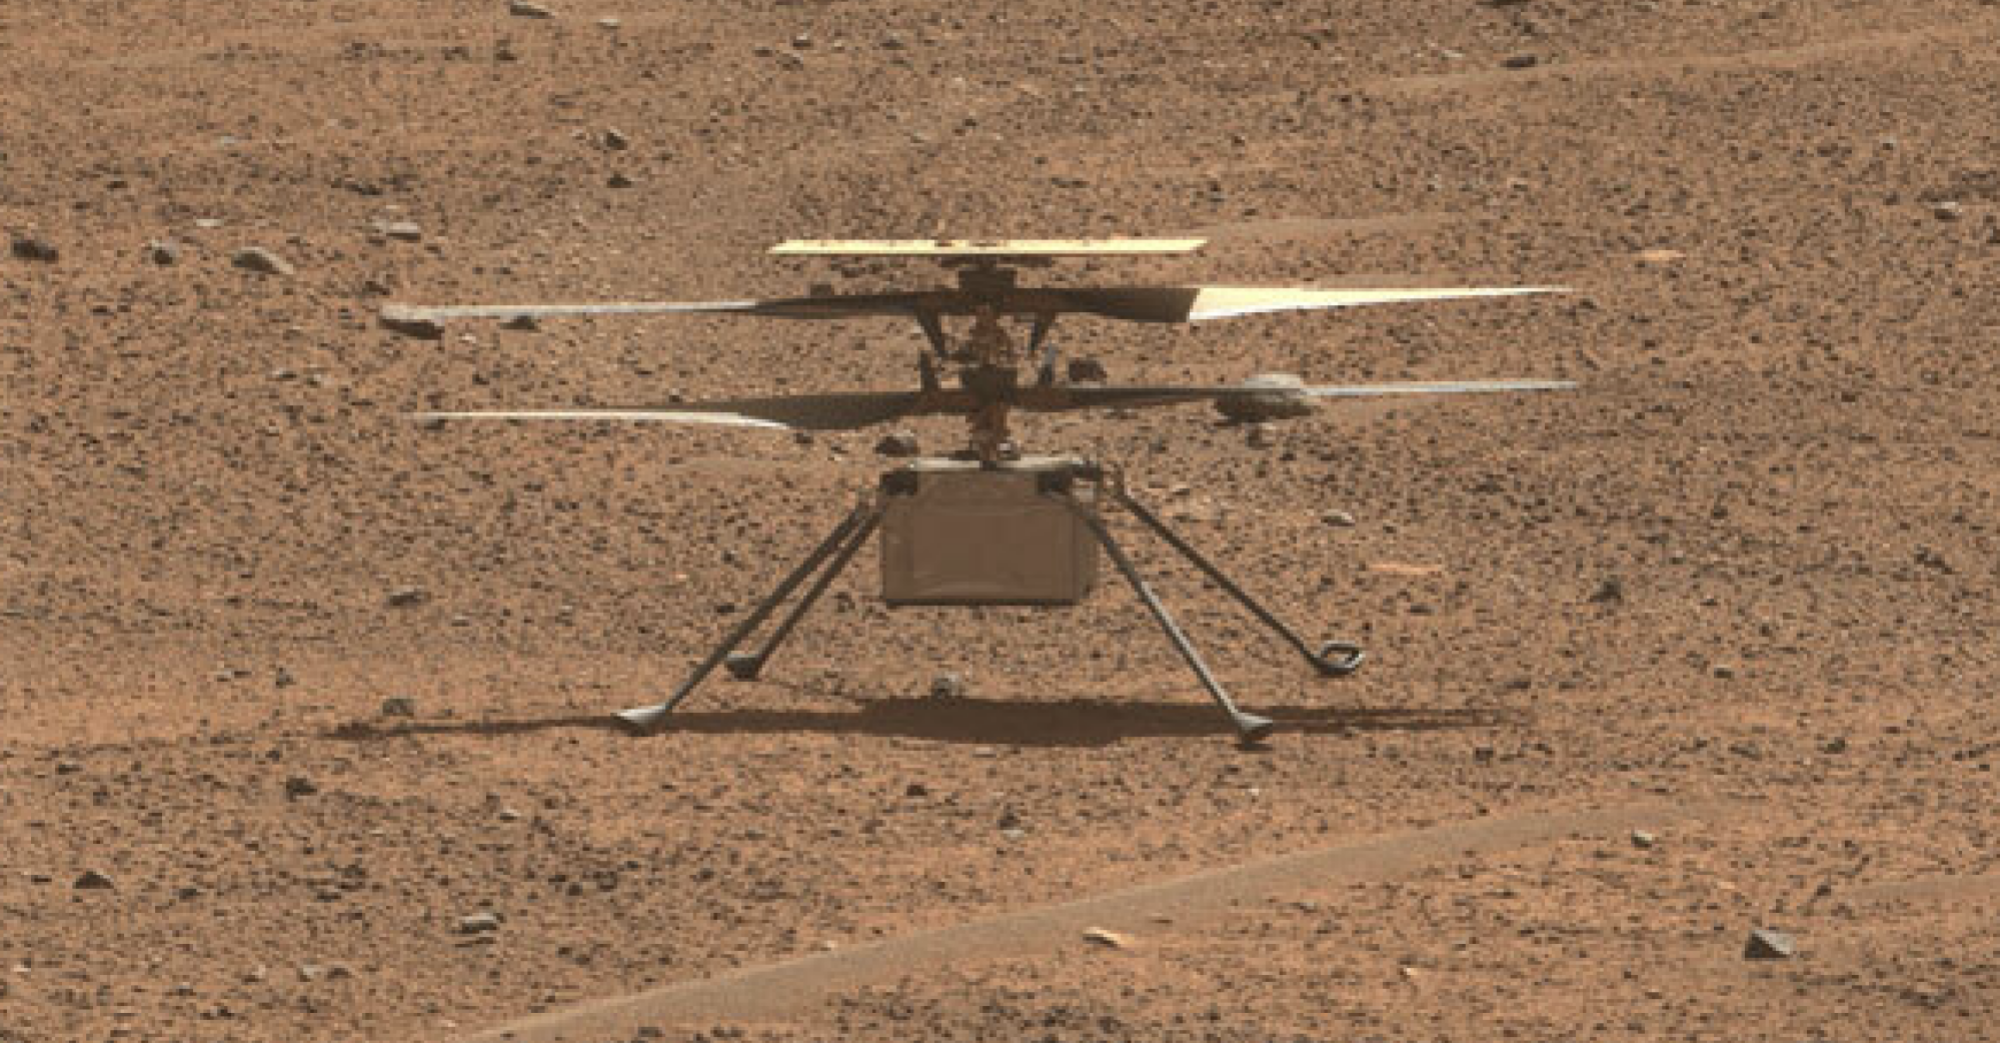 L'hélicoptère Ingenuity sur le sol du désert de Mars après son 53e vol raccourci.